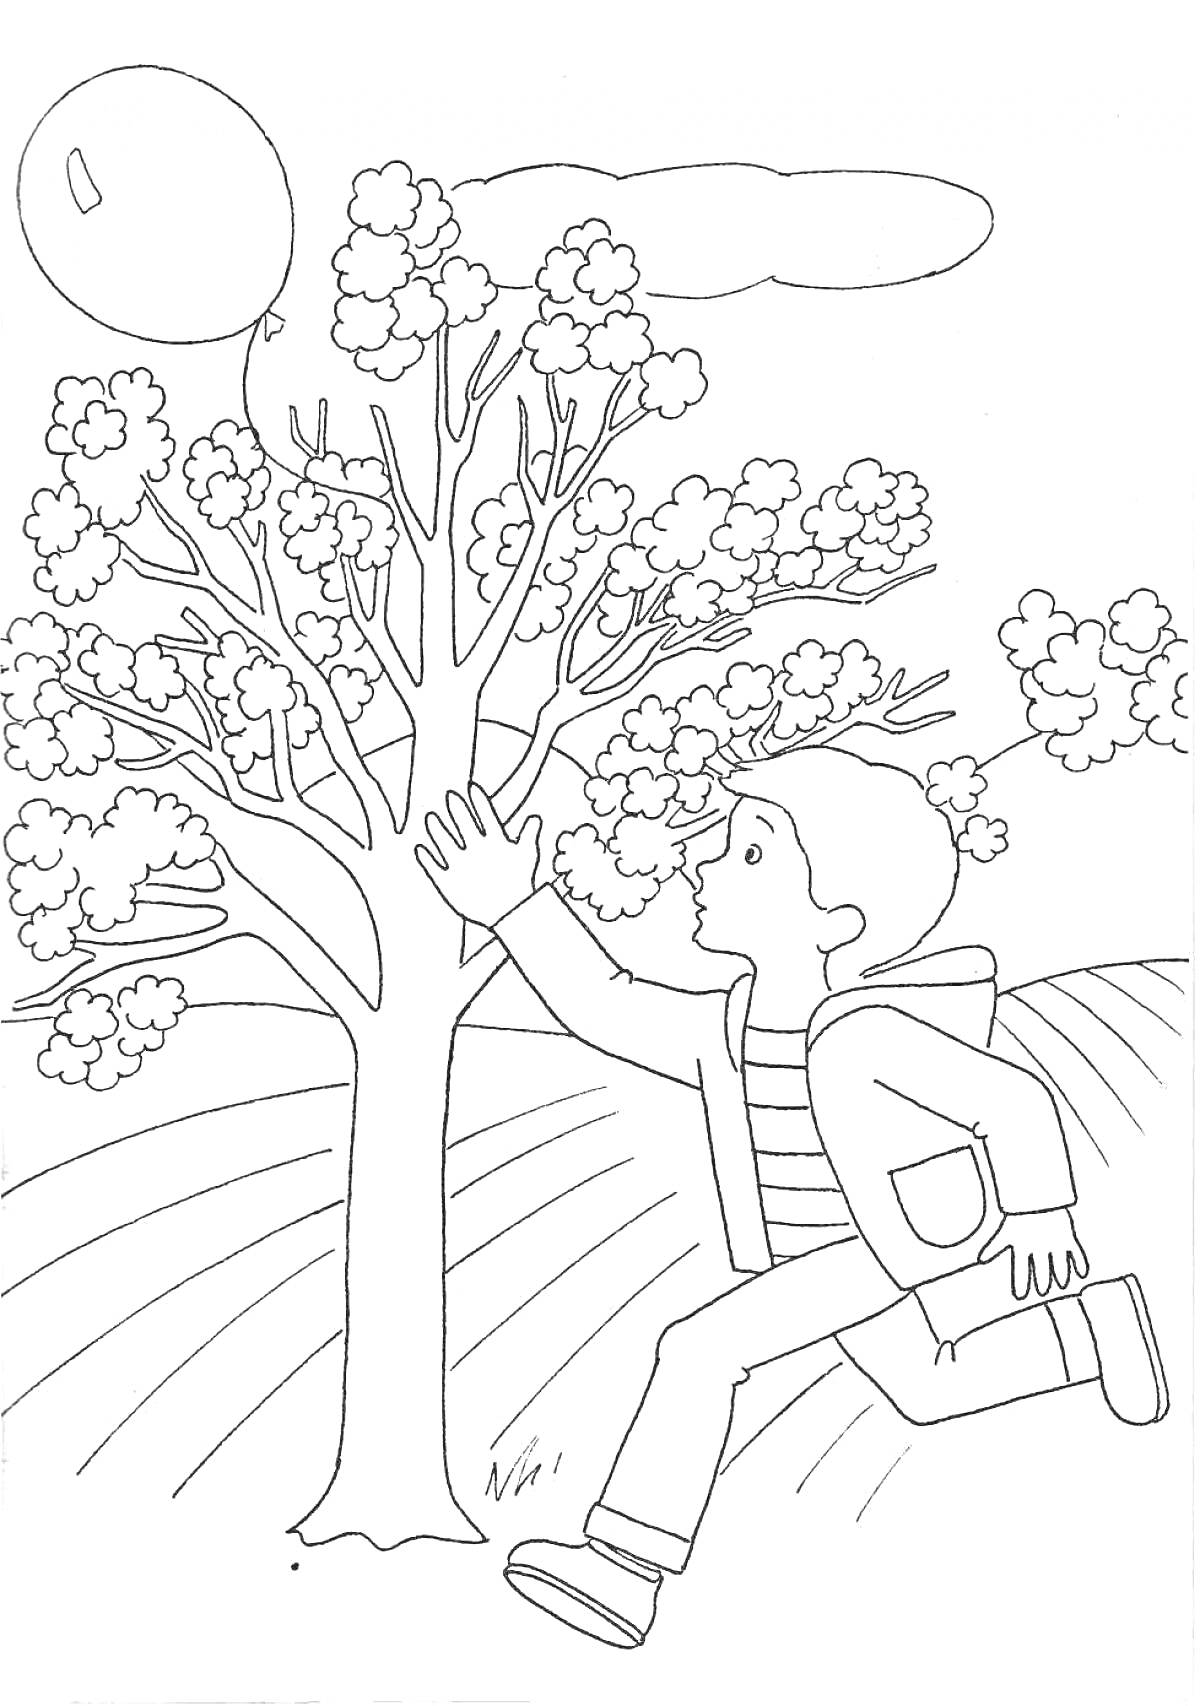 Раскраска Мальчик в майке и куртке, бежит к дереву с листвой, с воздушным шаром в небе и облаками